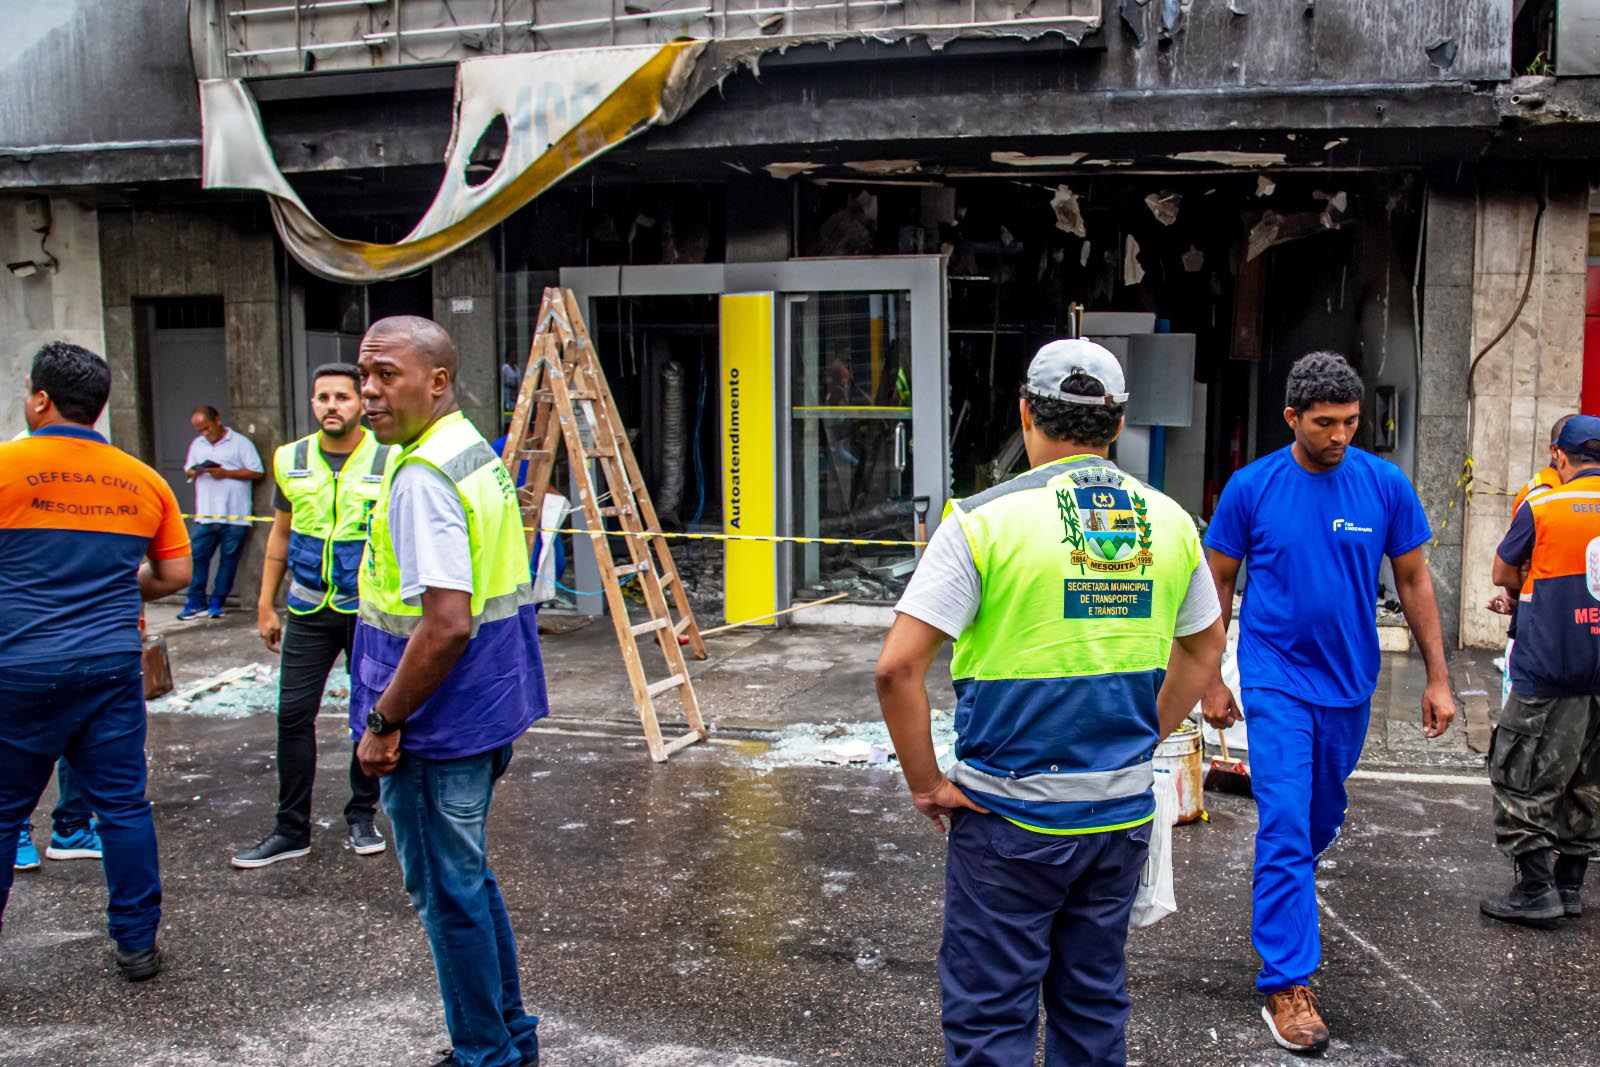 Estrutura de agência bancária incendiada em Mesquita não está comprometida